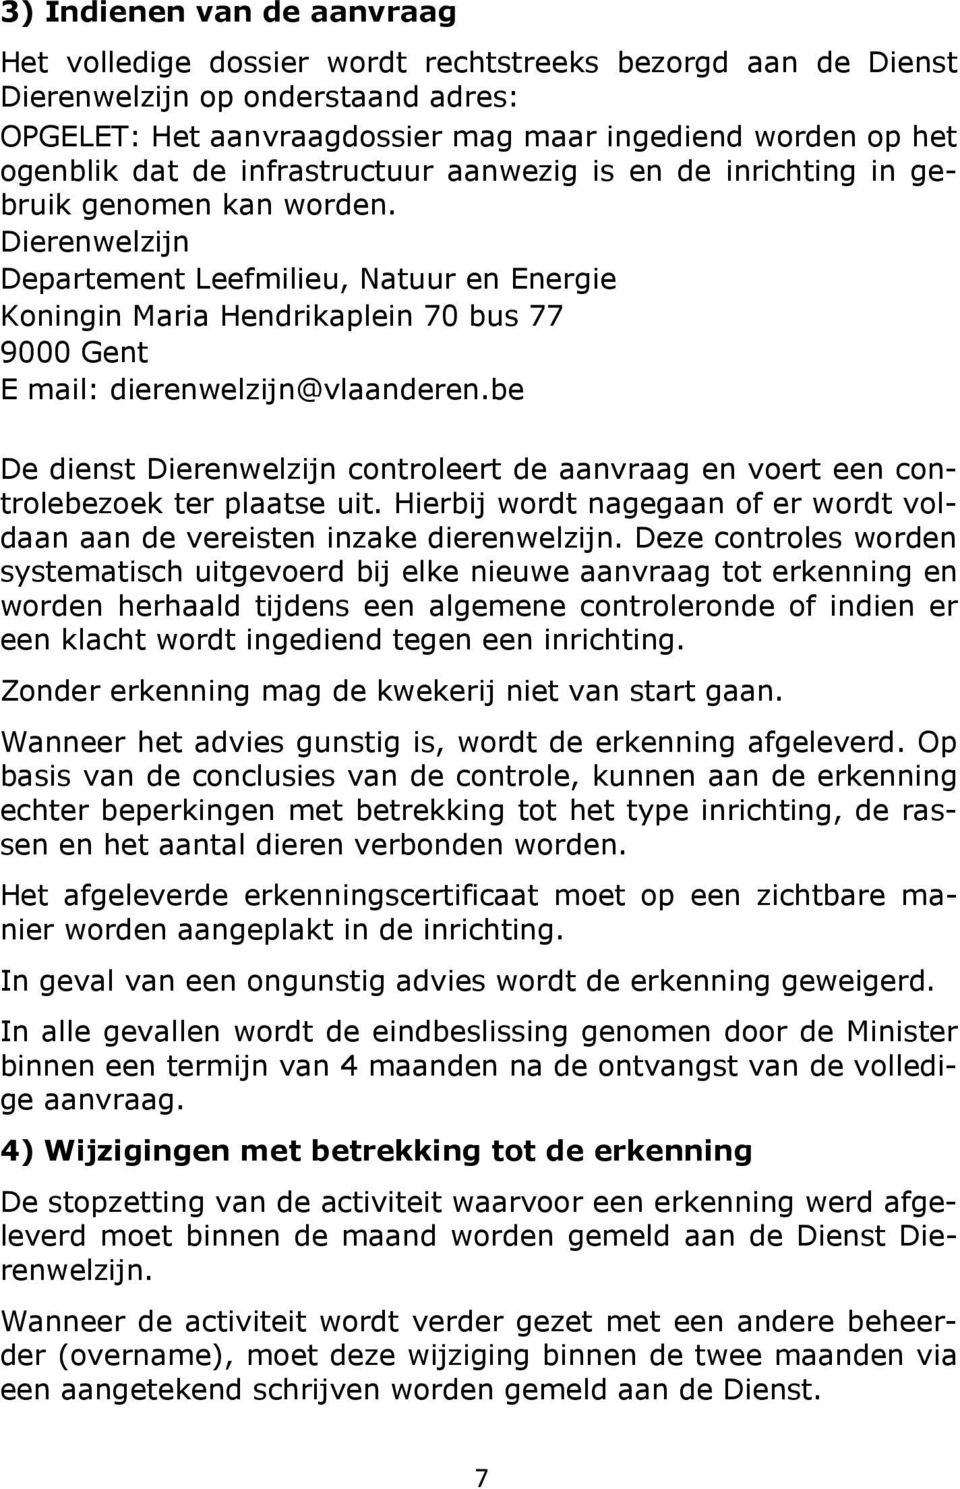 Dierenwelzijn Departement Leefmilieu, Natuur en Energie Koningin Maria Hendrikaplein 70 bus 77 9000 Gent E mail: dierenwelzijn@vlaanderen.